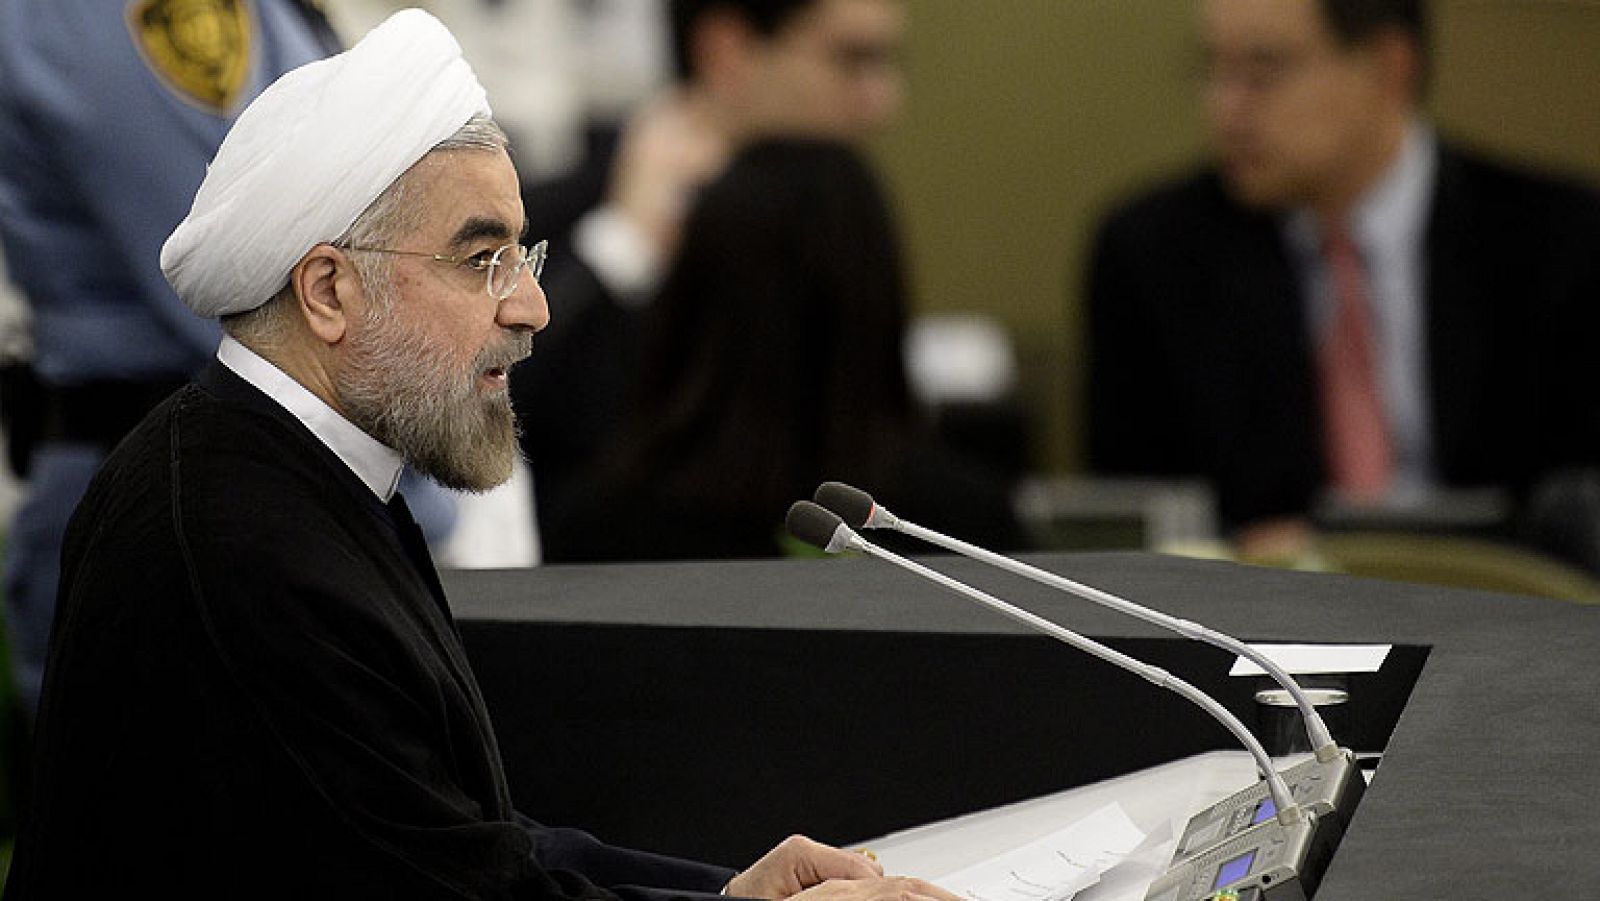 El presidente iraní, Hasan Rohaní, se ha presentado ante la Asamblea General de la ONU con un discurso pacifista que abre, por primera vez en décadas, la puerta al diálogo con EE.UU. El nuevo mandatario de la República Islámica ha asegurado ante los líderes internacionales que su país no supone "ninguna amenaza para el mundo". 